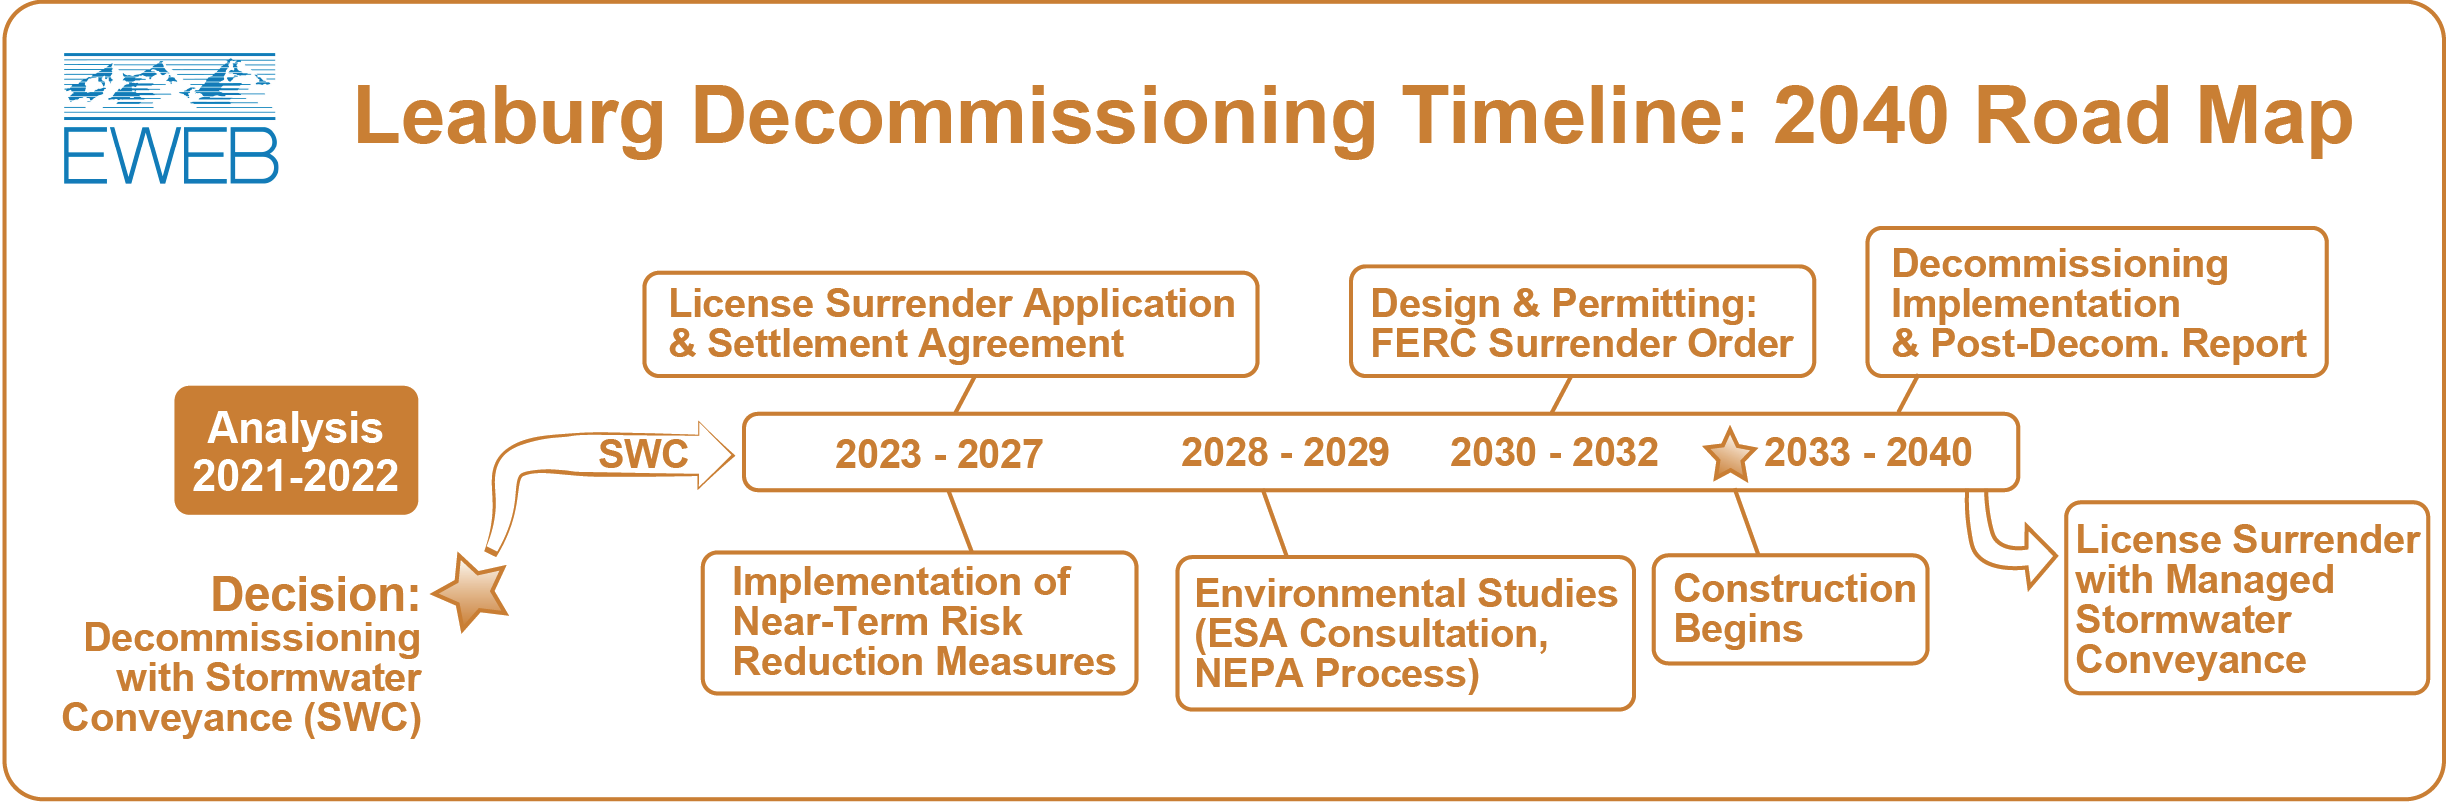 Timeline of Leaburg Decommissioning milestones